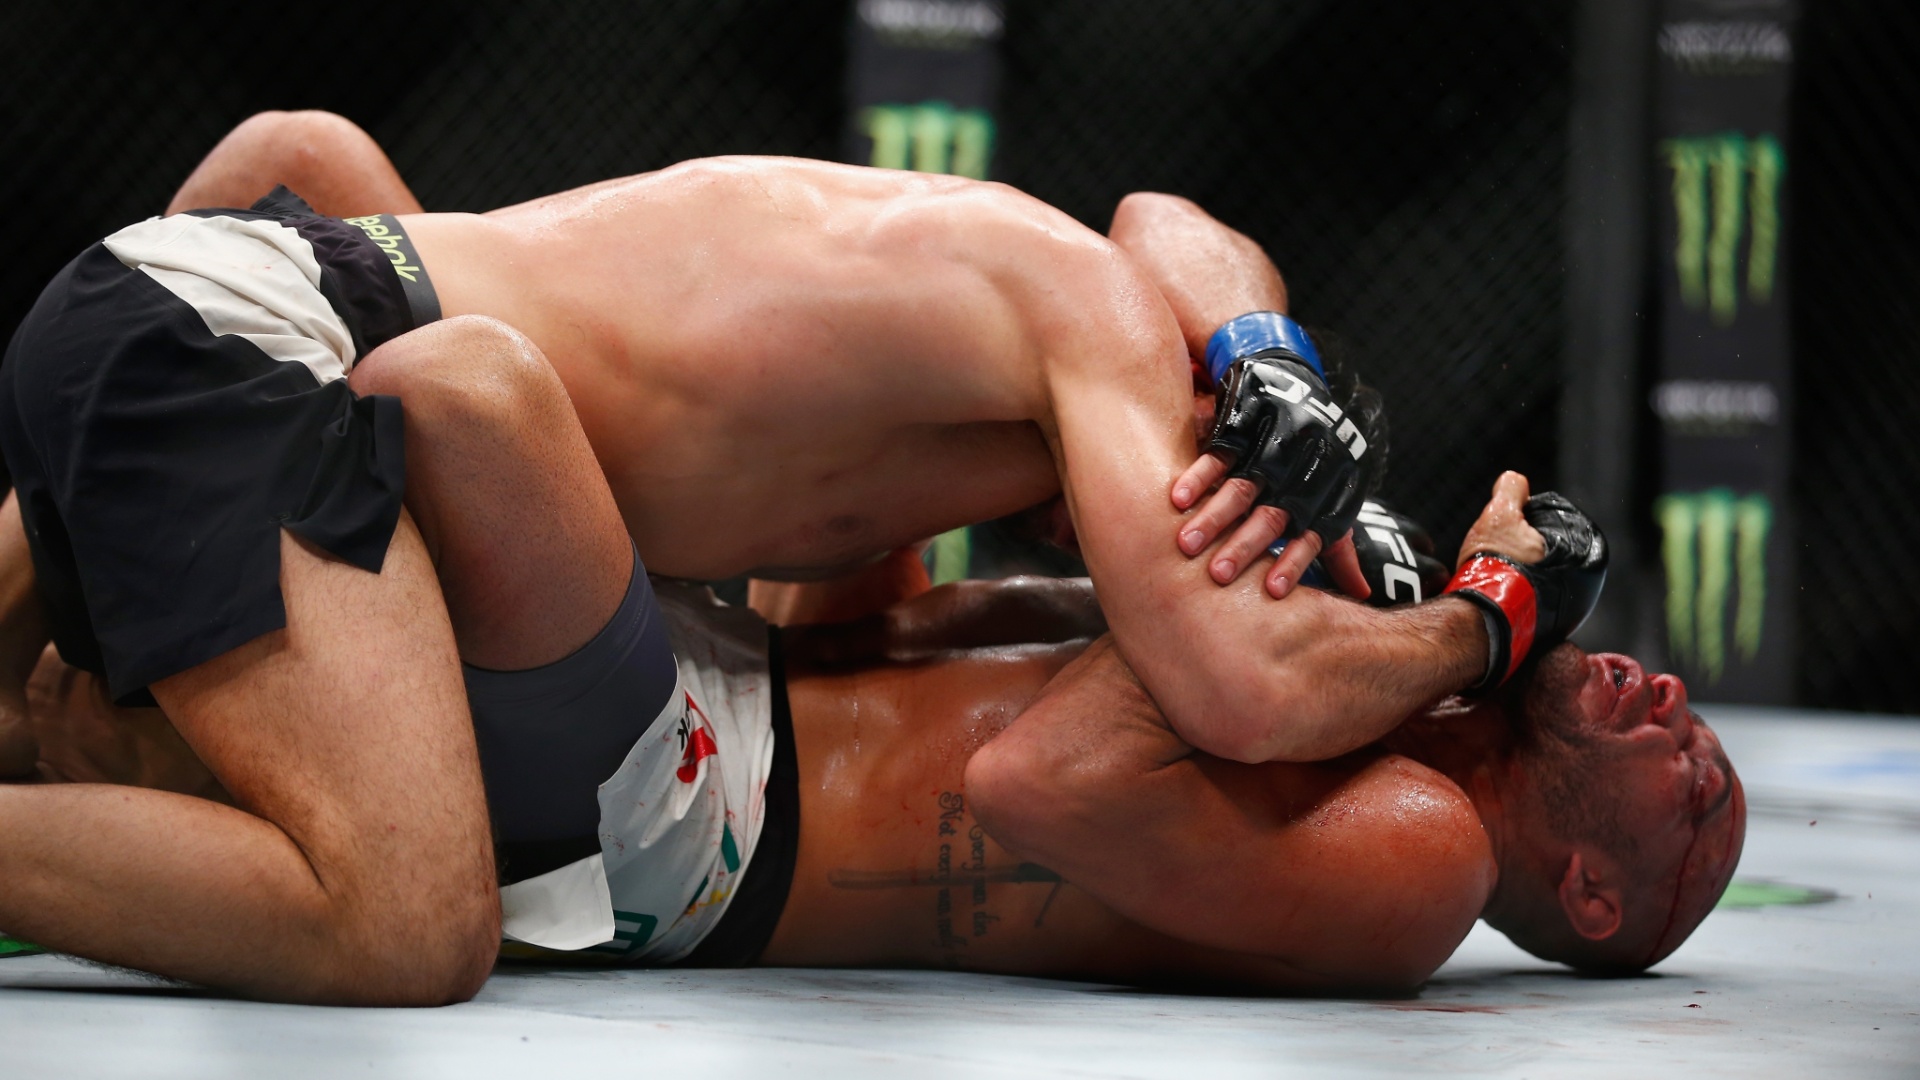 Gegard Mousasi (topo) castiga o brasileiro Thales Leites no ground and pound, em luta neste sábado (27), no UFC em Londres